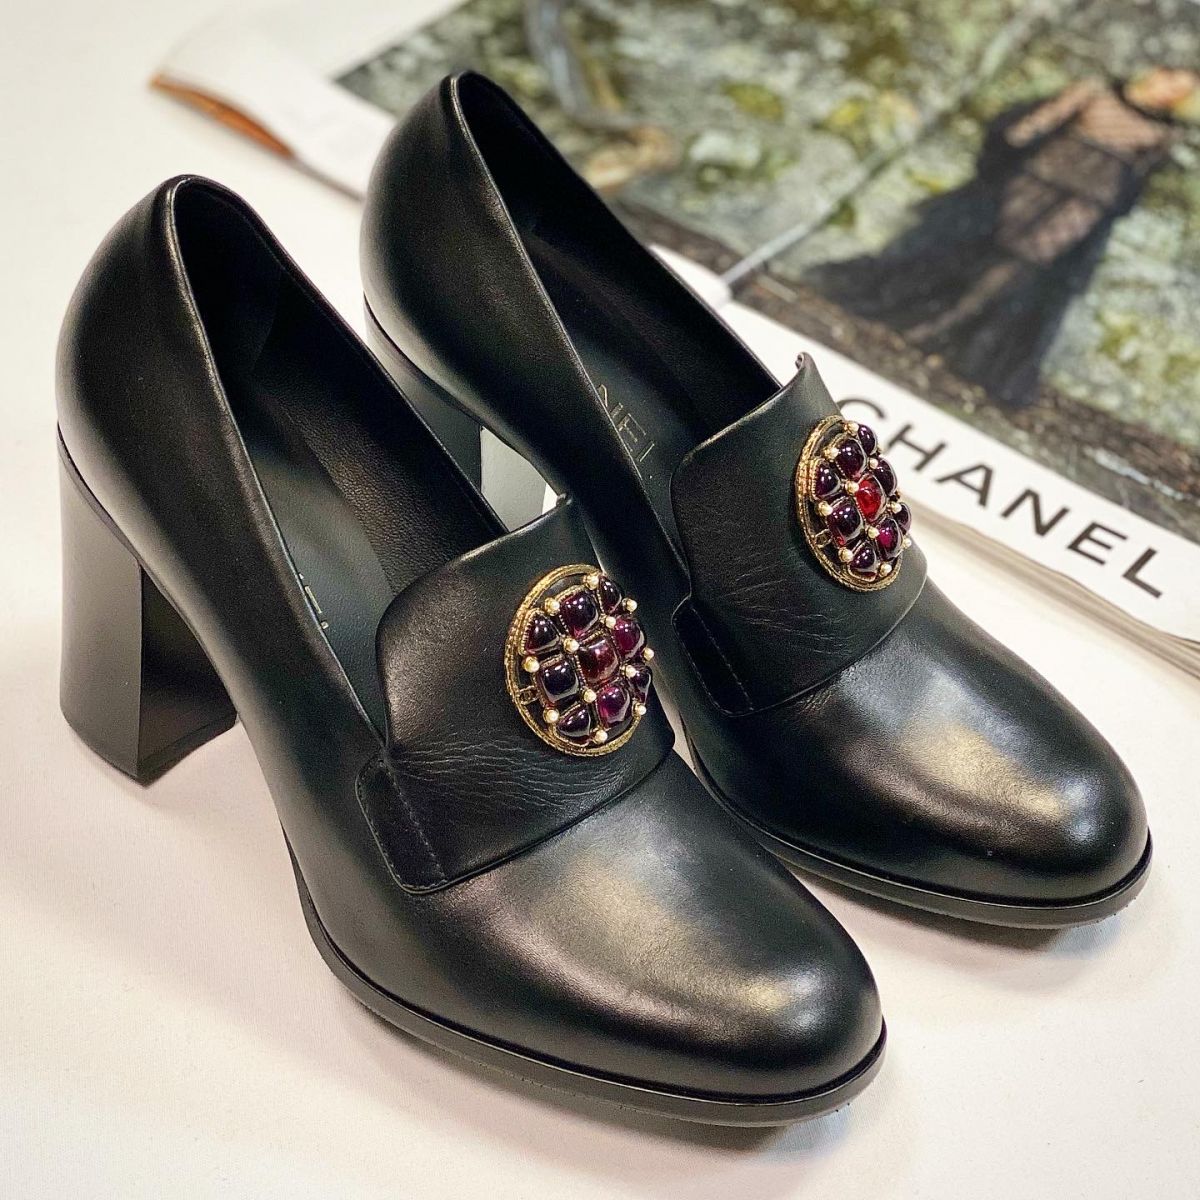 Туфли Chanel  размер 38.5 цена 15 385 руб / новые /